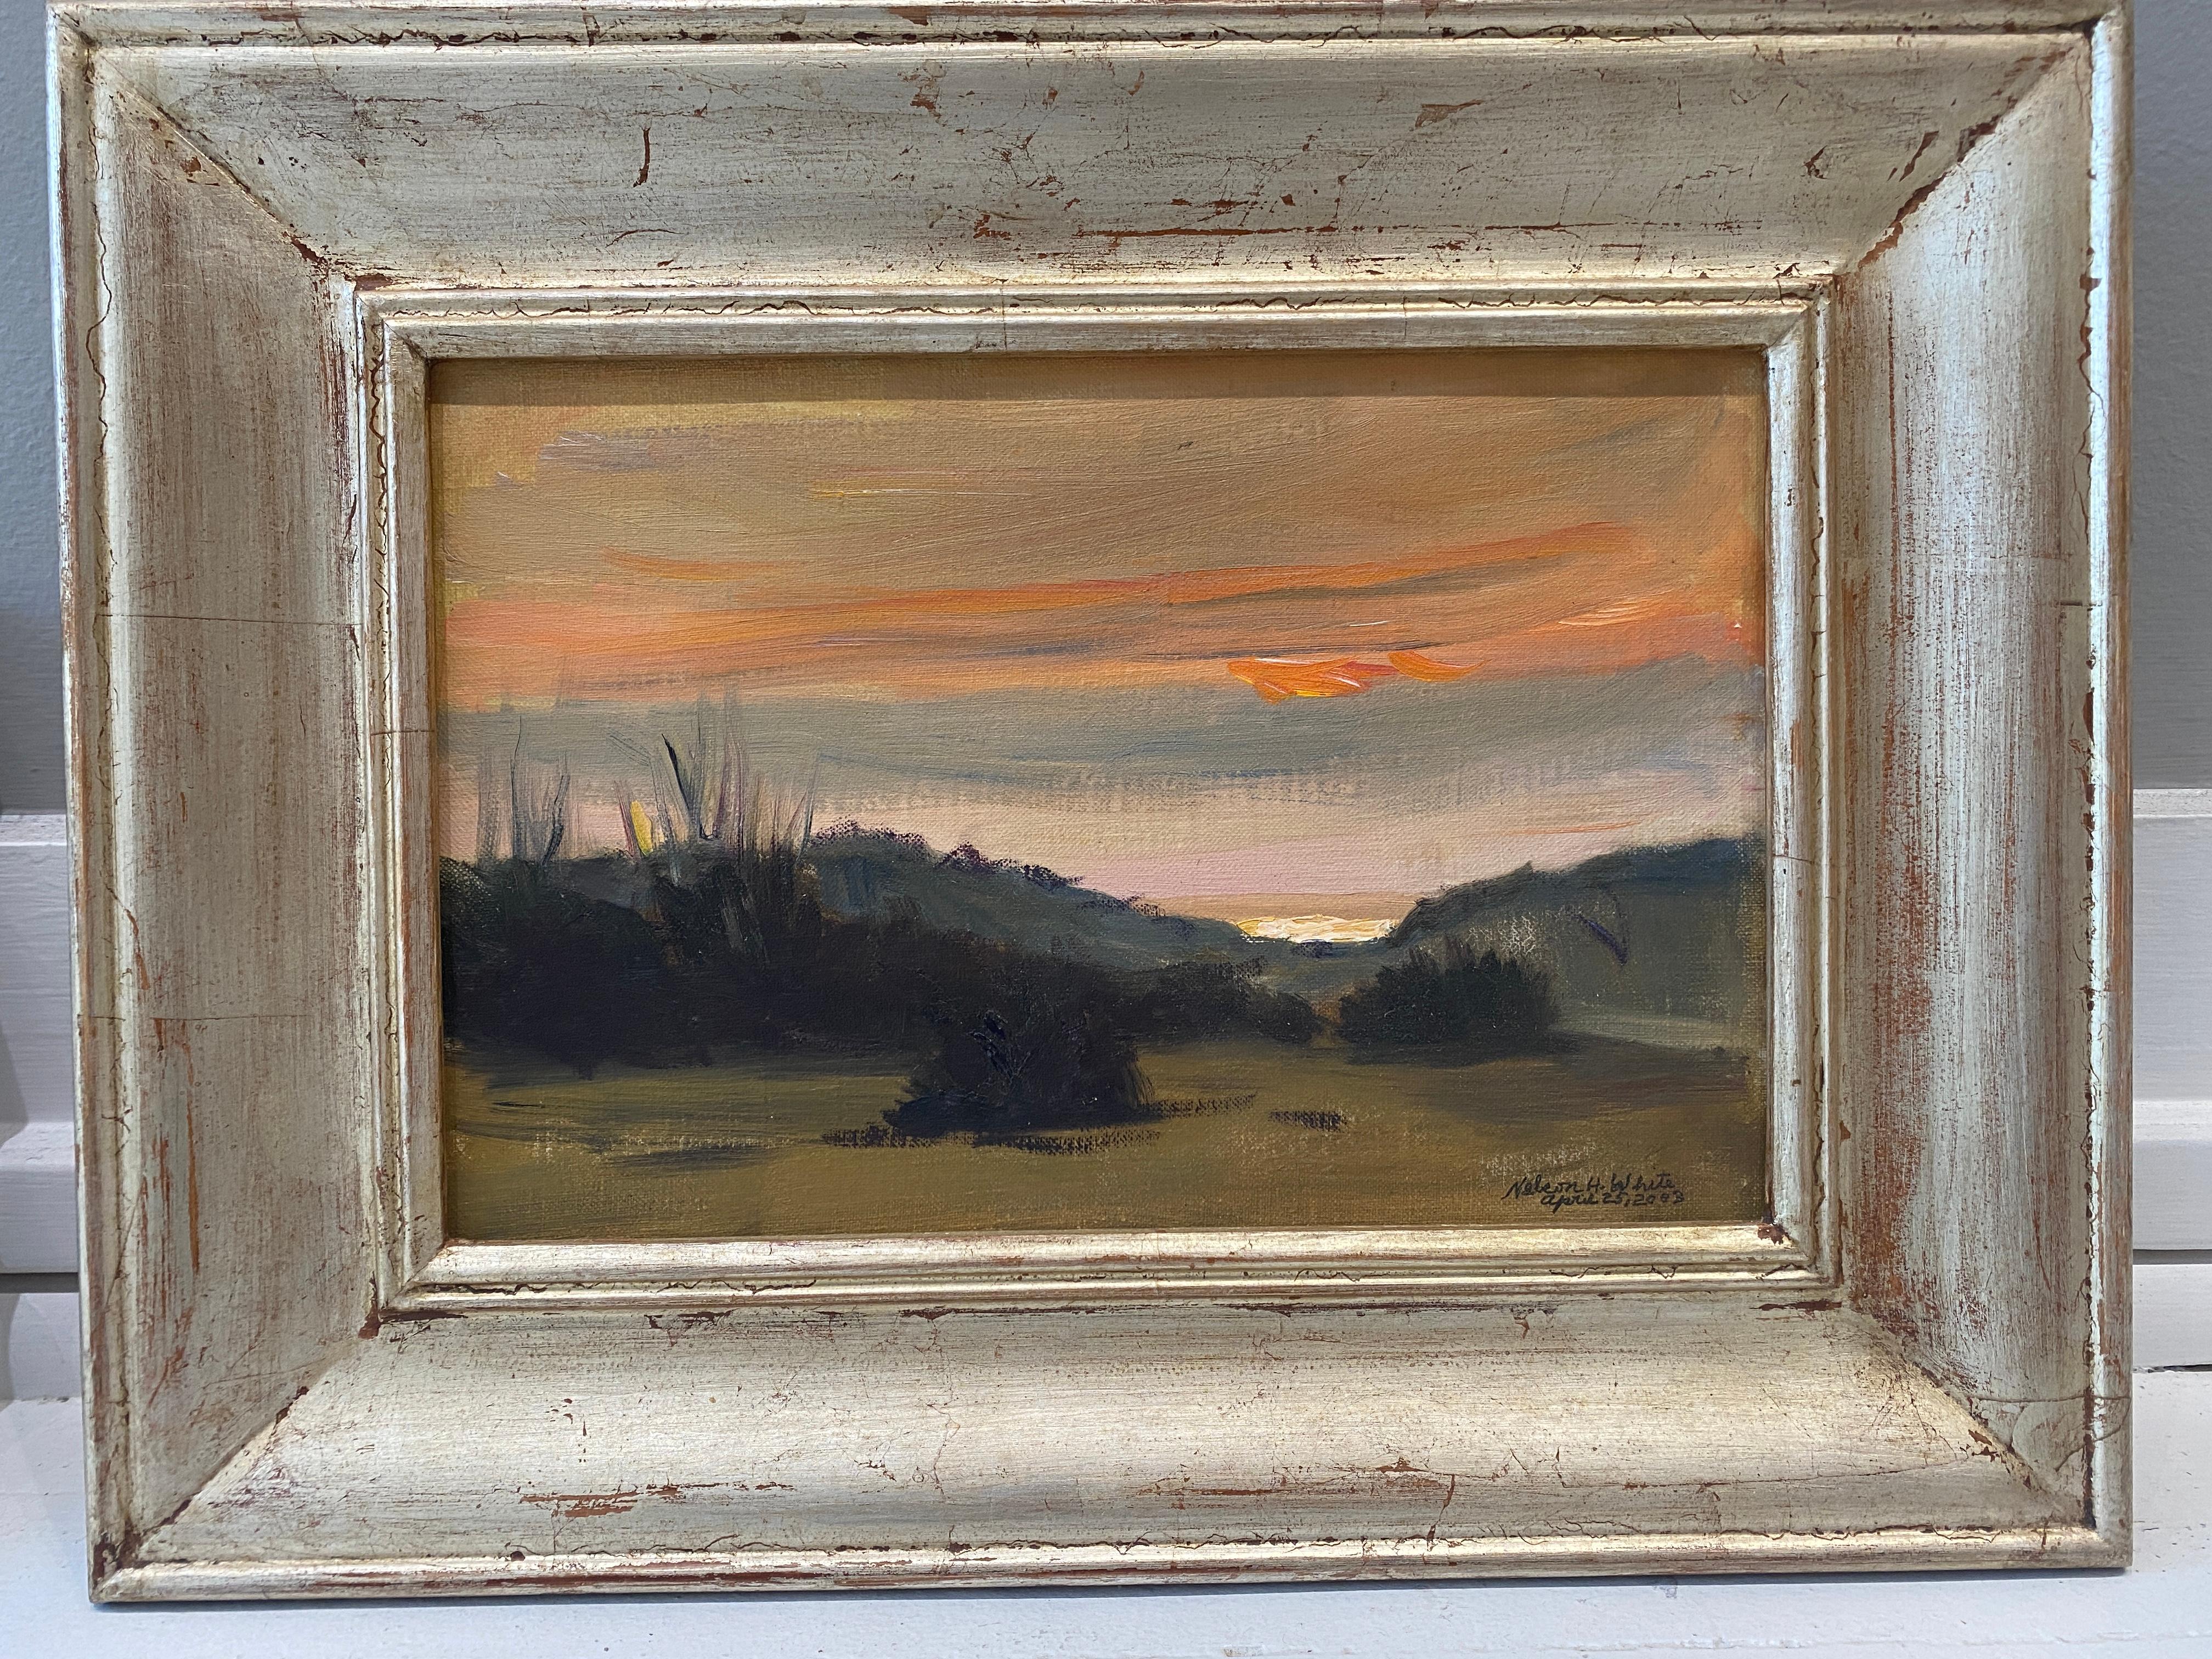 Un doux coucher de soleil sur un horizon lointain qui perce à travers les dunes de la plage. Peint en plein air.

Dimensions du cadre  13,5 x 17,5po

Biographie de l'artiste :
Nelson H. White est né à New London, dans le Connecticut, en 1932. White